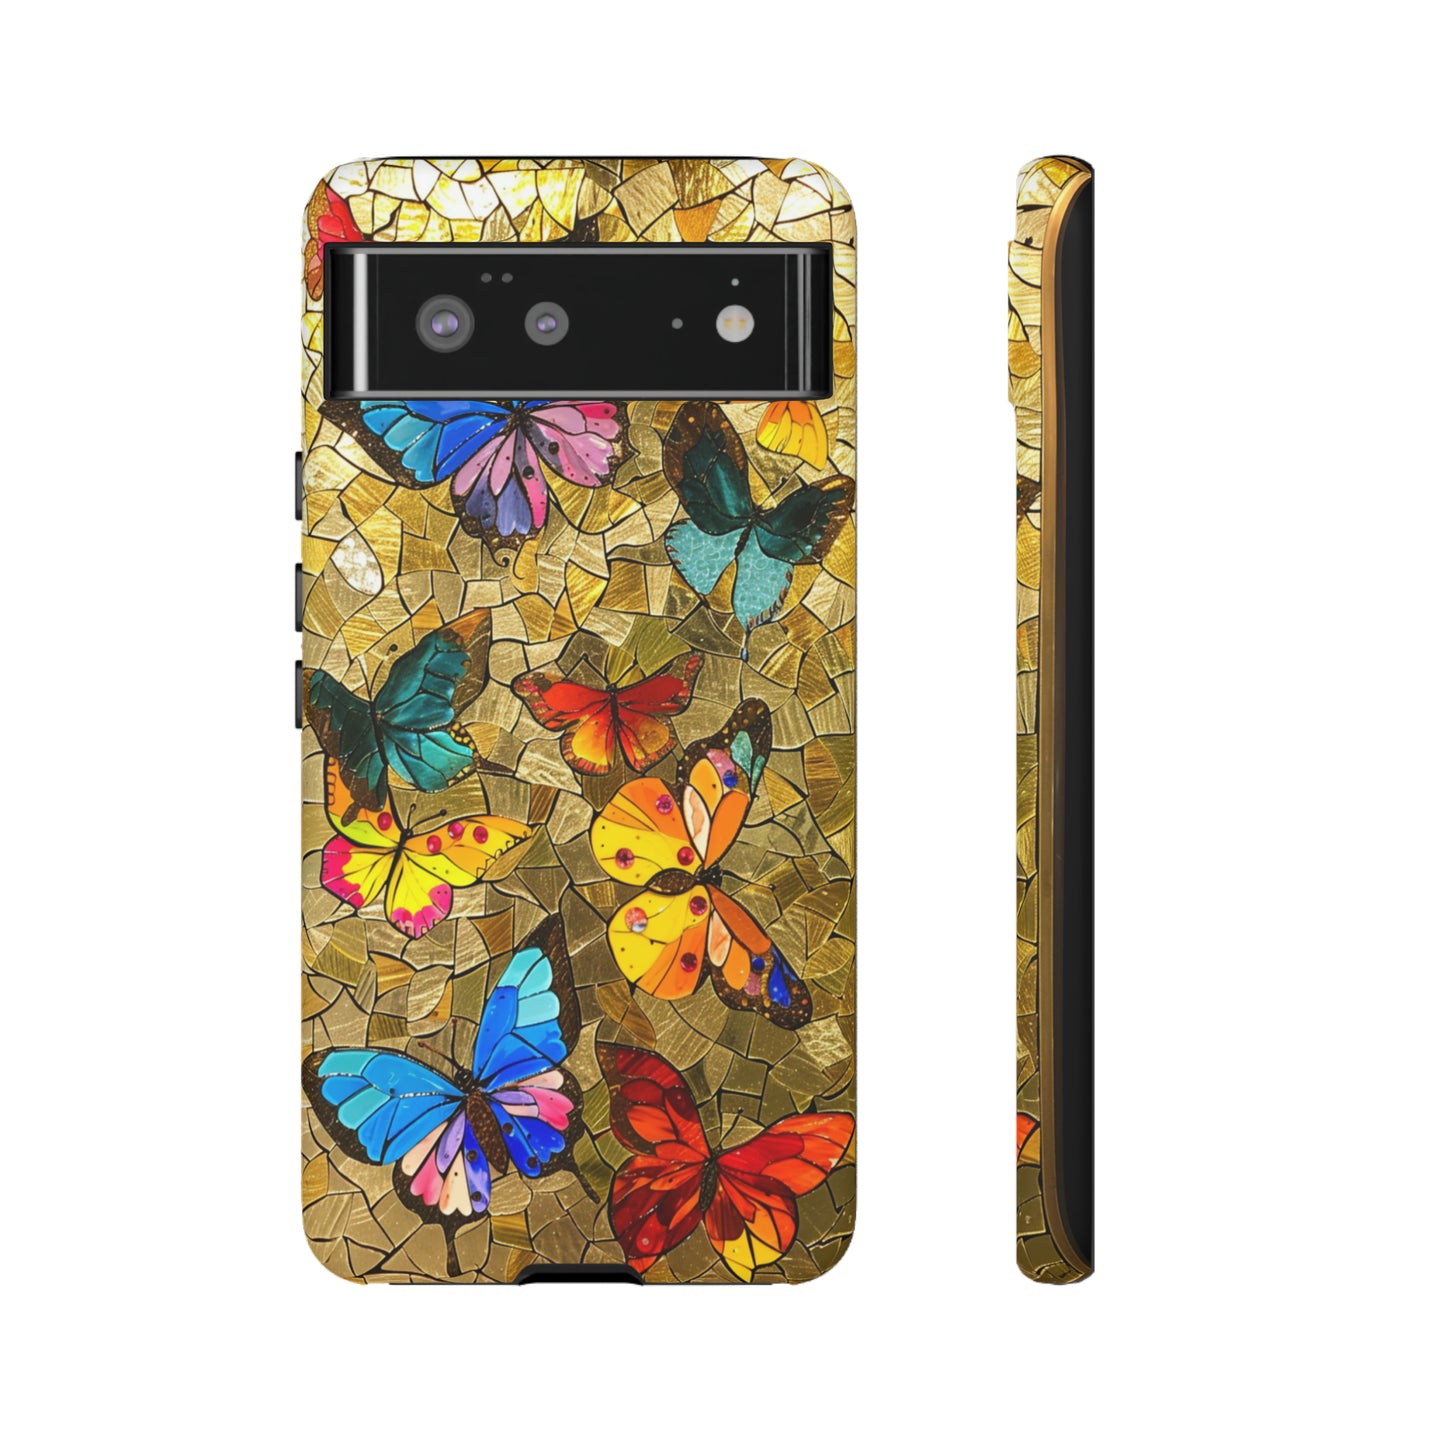 Gustav Klimt Style Flower Garden Painting Phone Case